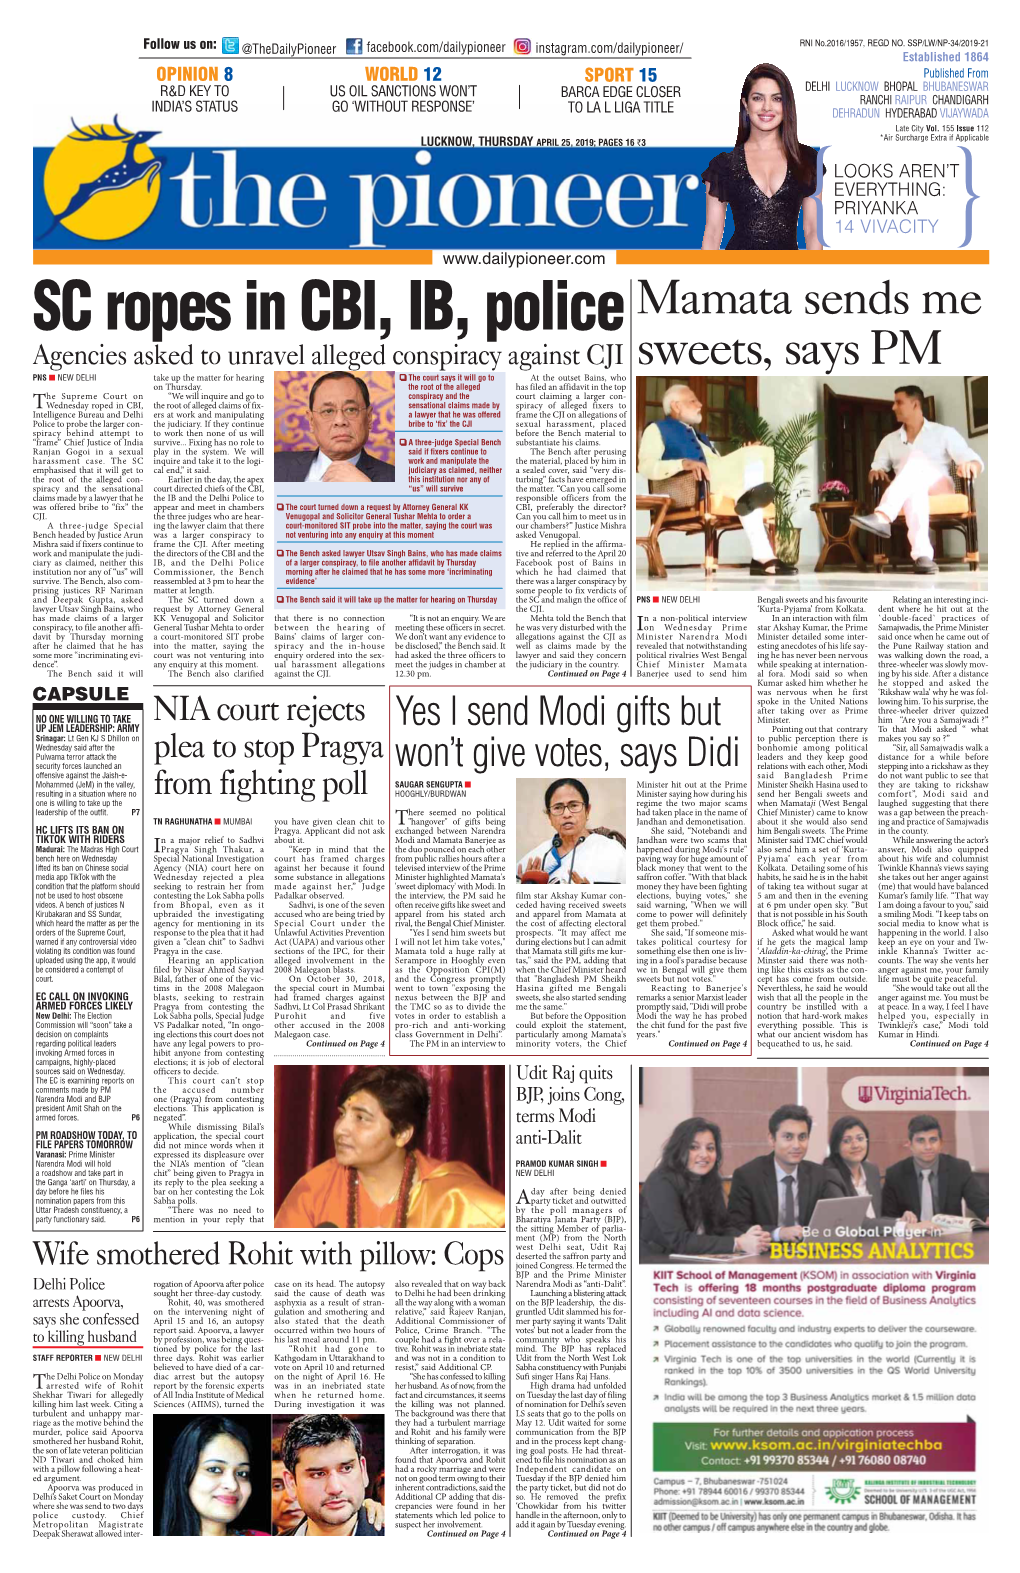 SC Ropes in CBI, IB, Police